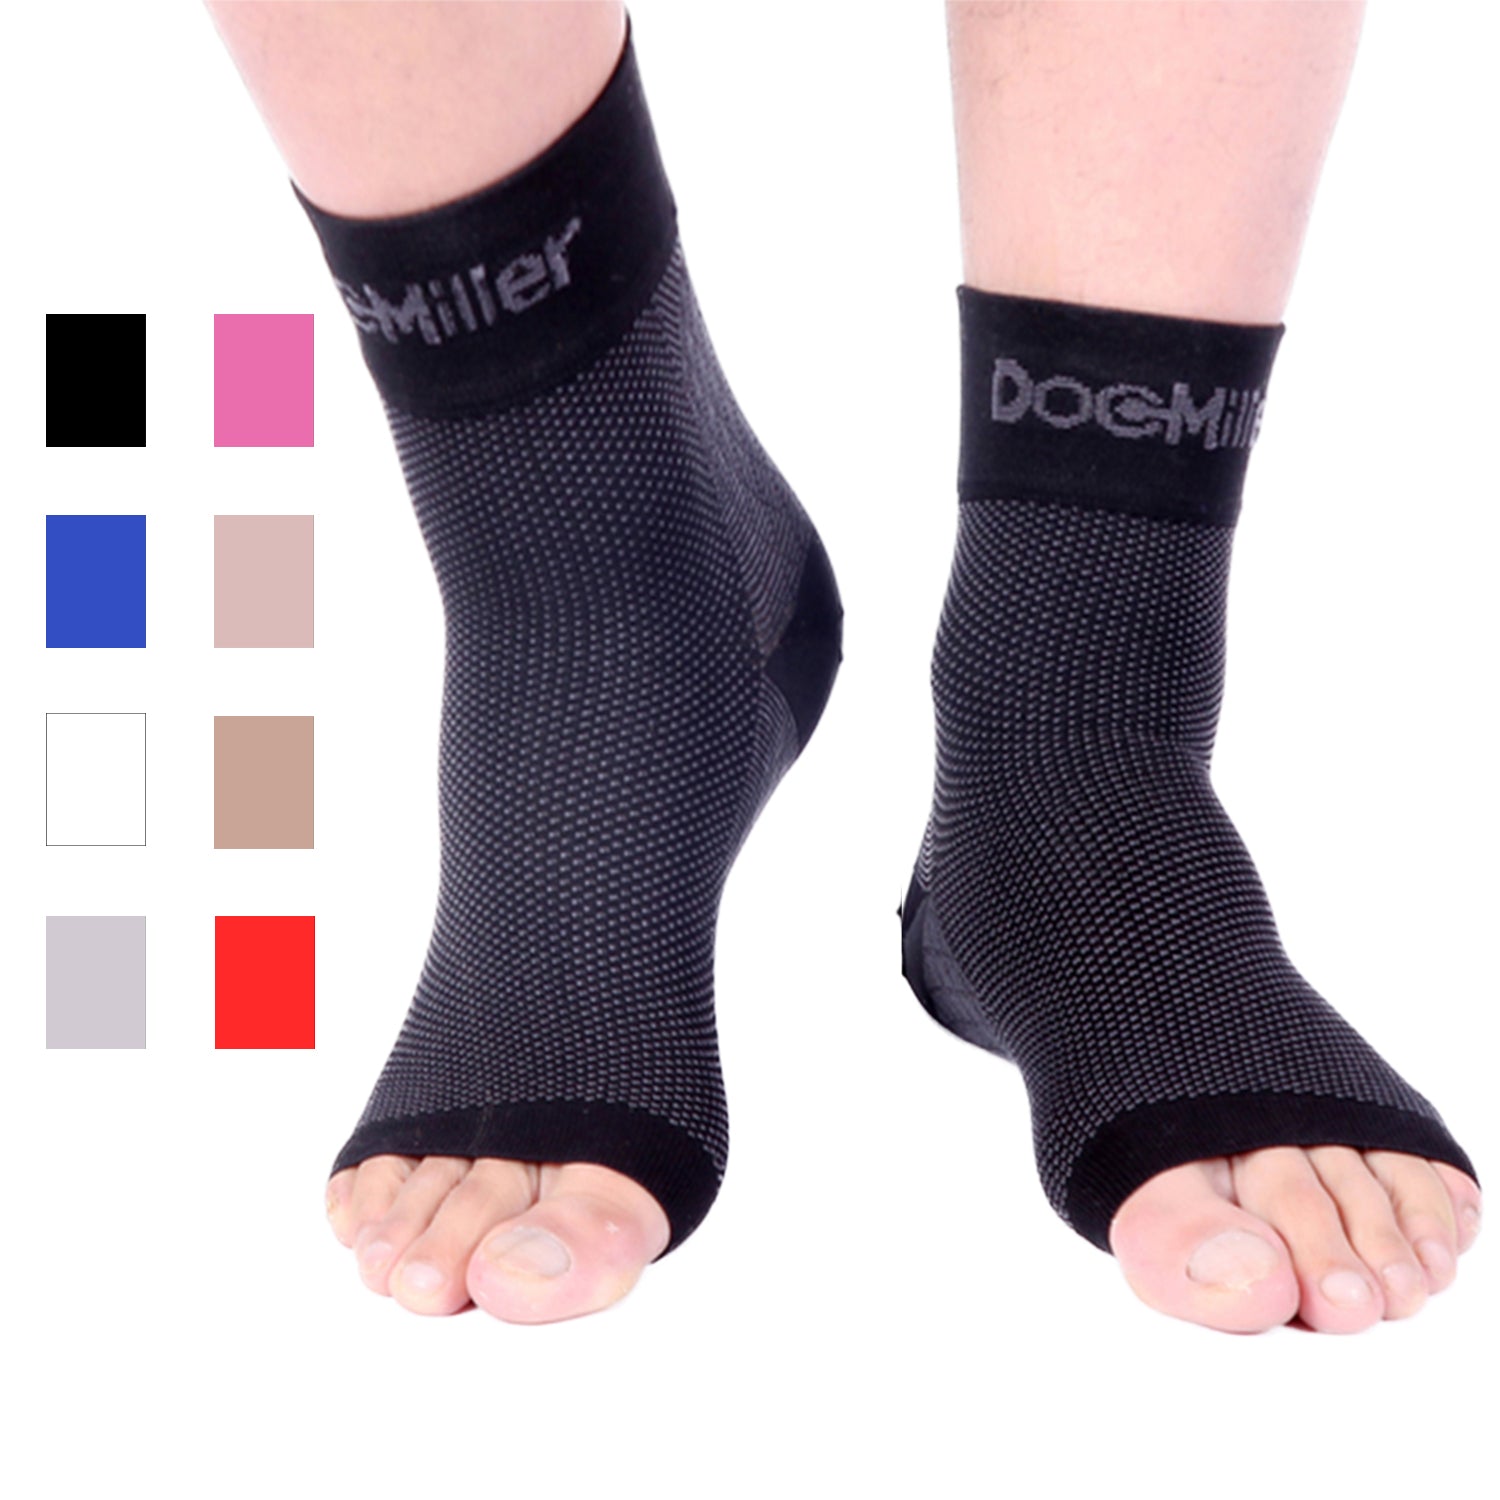 Doc Miller’s Medical Grade Ankle Compression Sleeve 30-40 mmHg